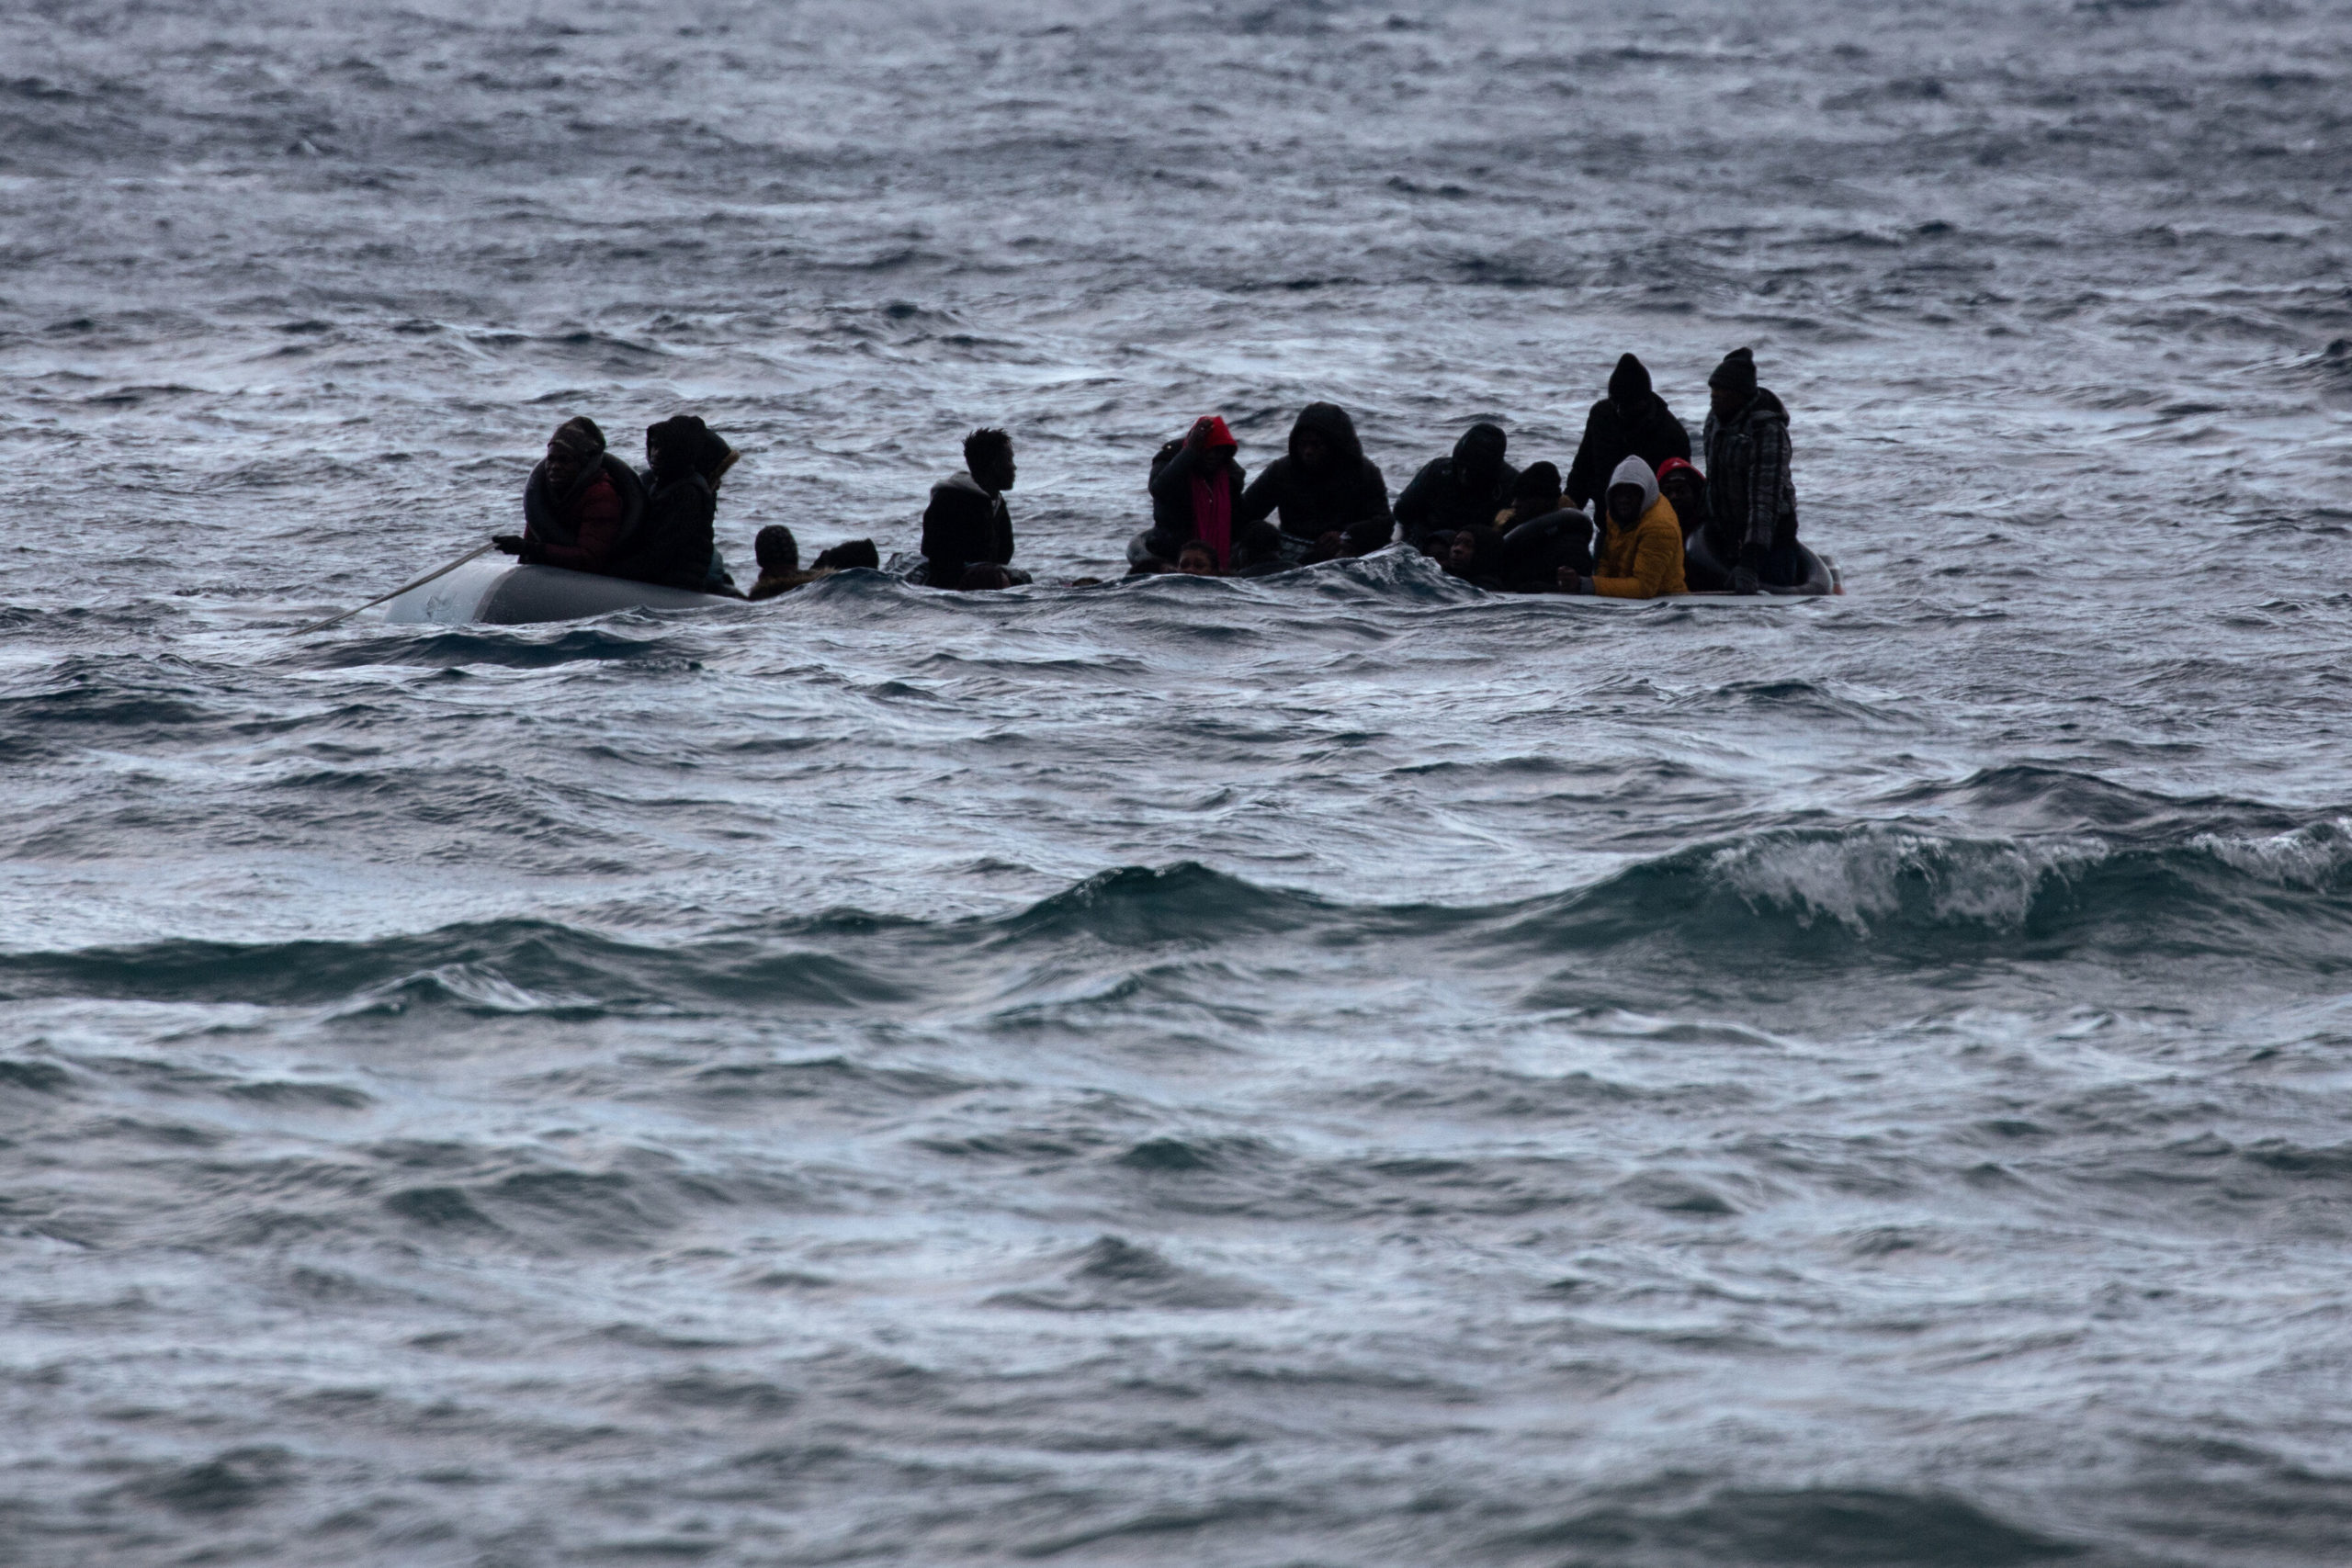 Lire la suite à propos de l’article Cinq (5) migrants noyés au large de la Tunisie